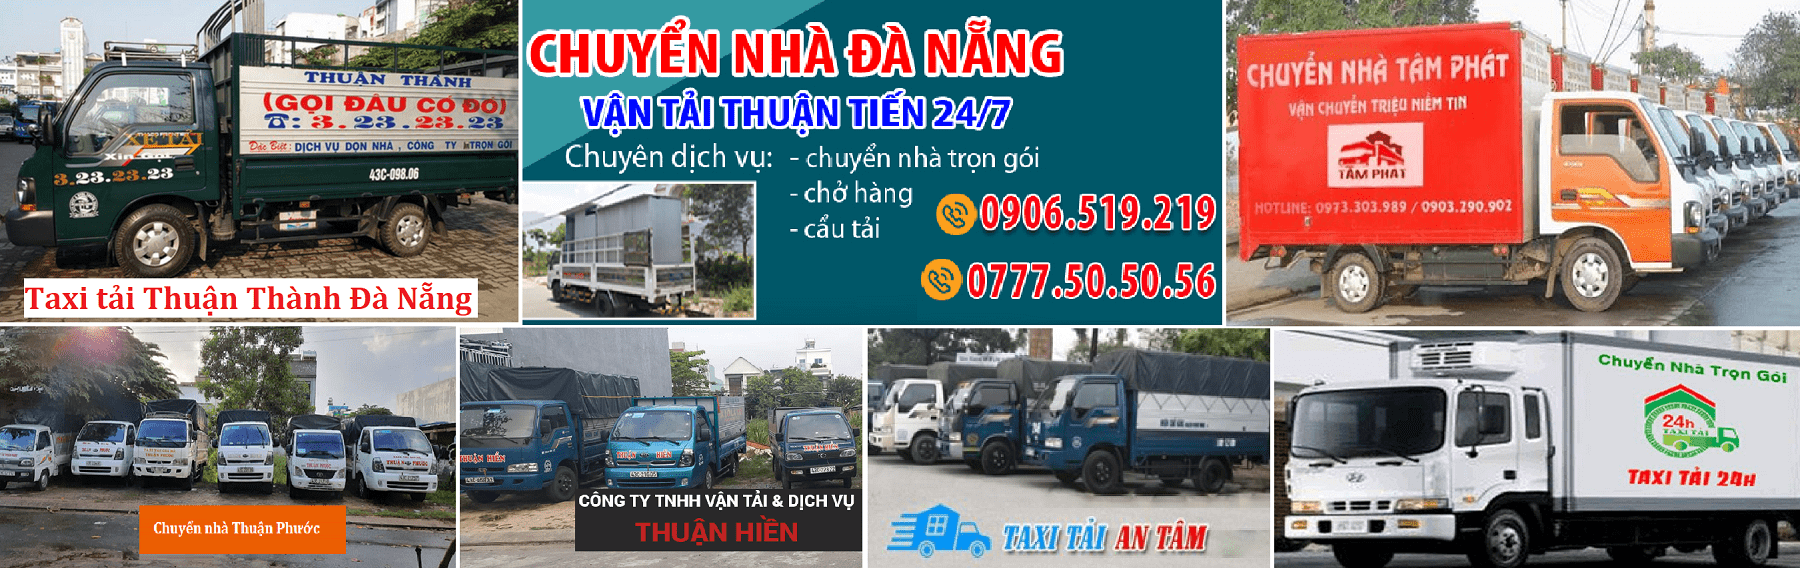 Top dịch vụ xe tải chuyển nhà Đà Nẵng